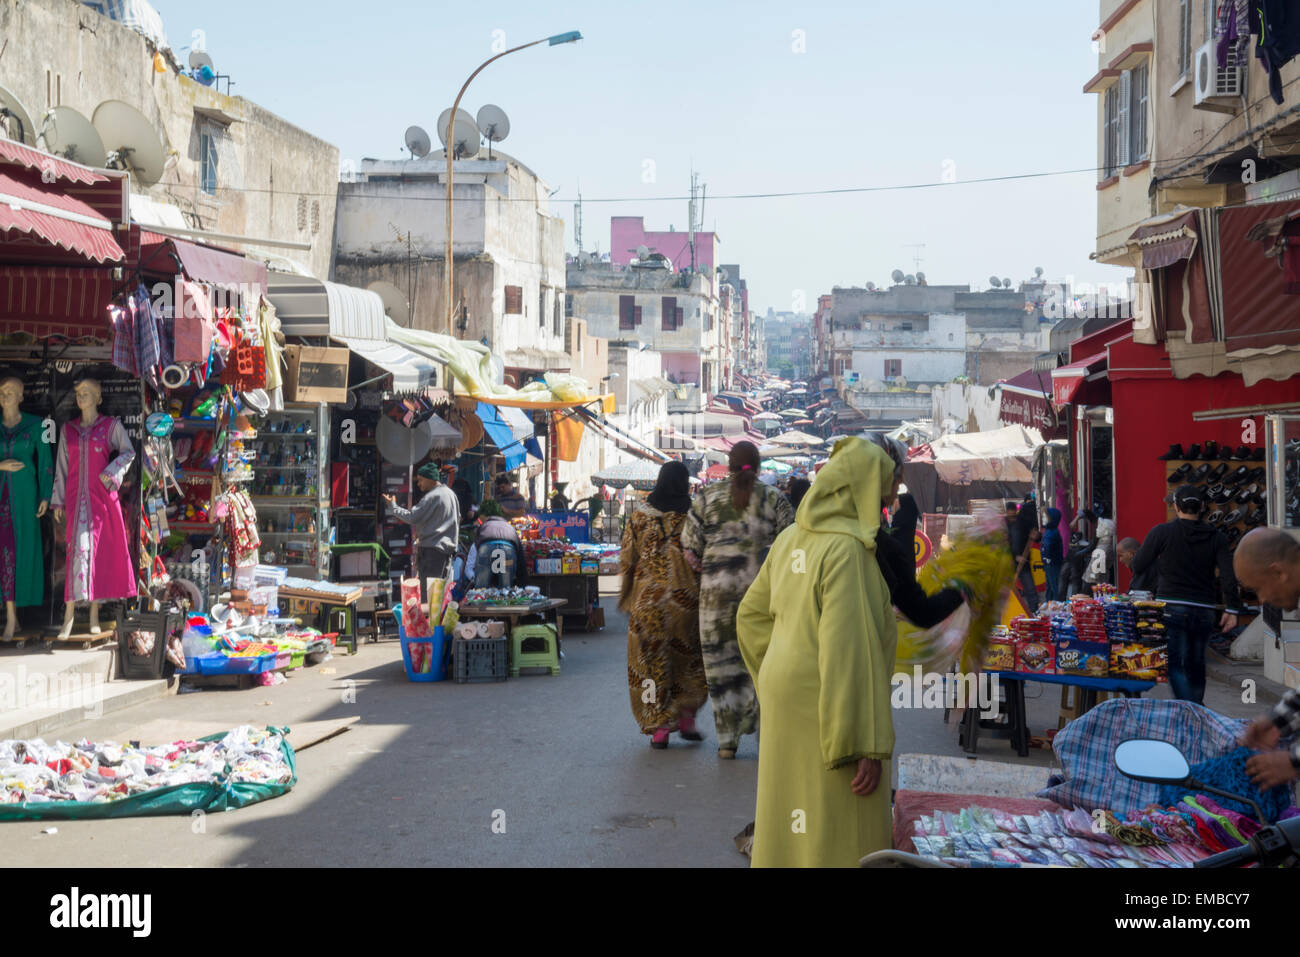 Open air market in Casablanca, Morocco Stock Photo